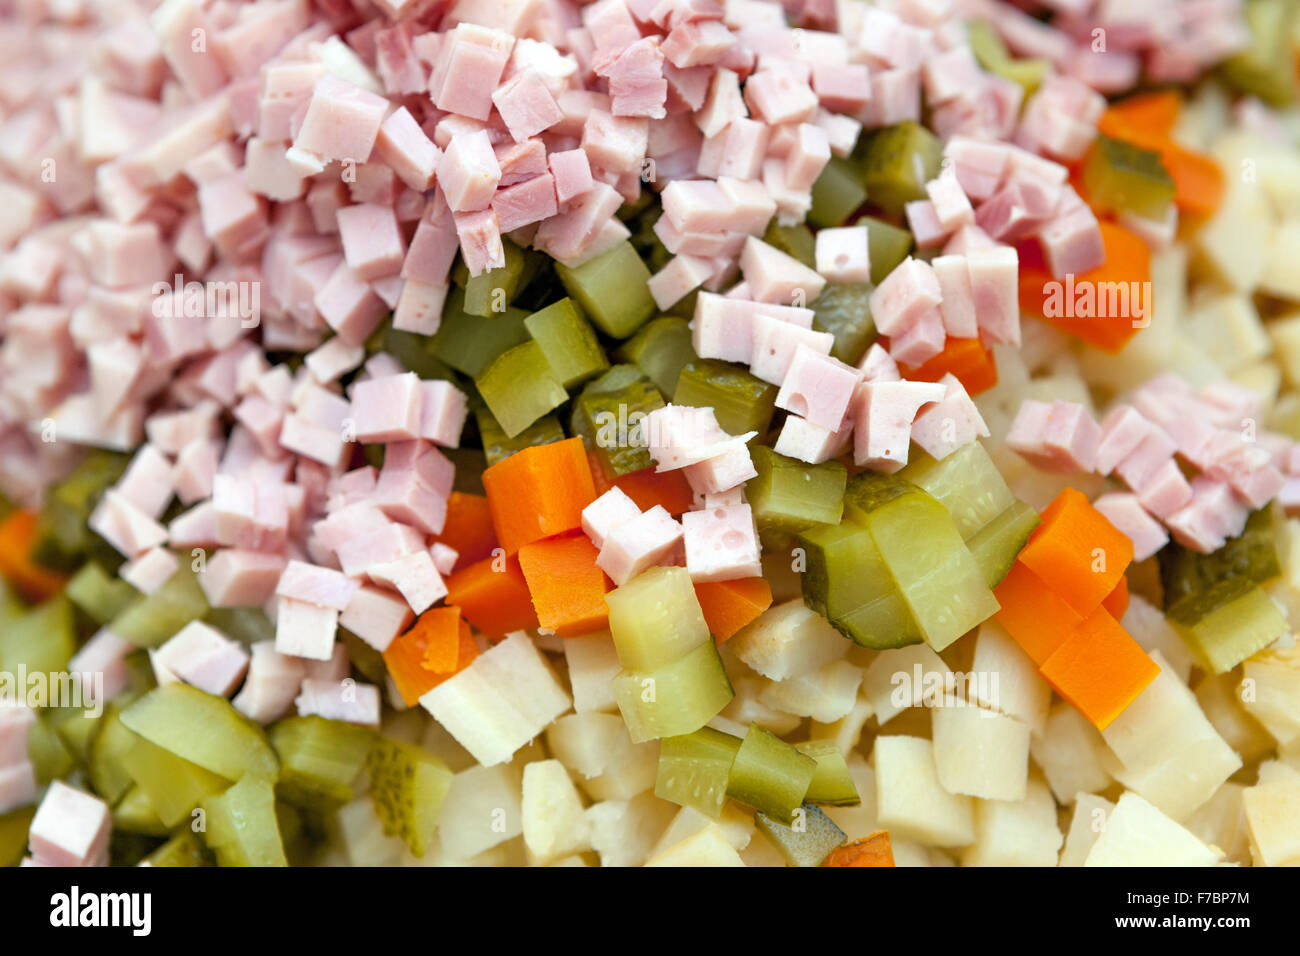 Les ingrédients de la salade de pommes de terre, coupées en dés, saucisses, Concombre, carottes, pommes de terre Banque D'Images